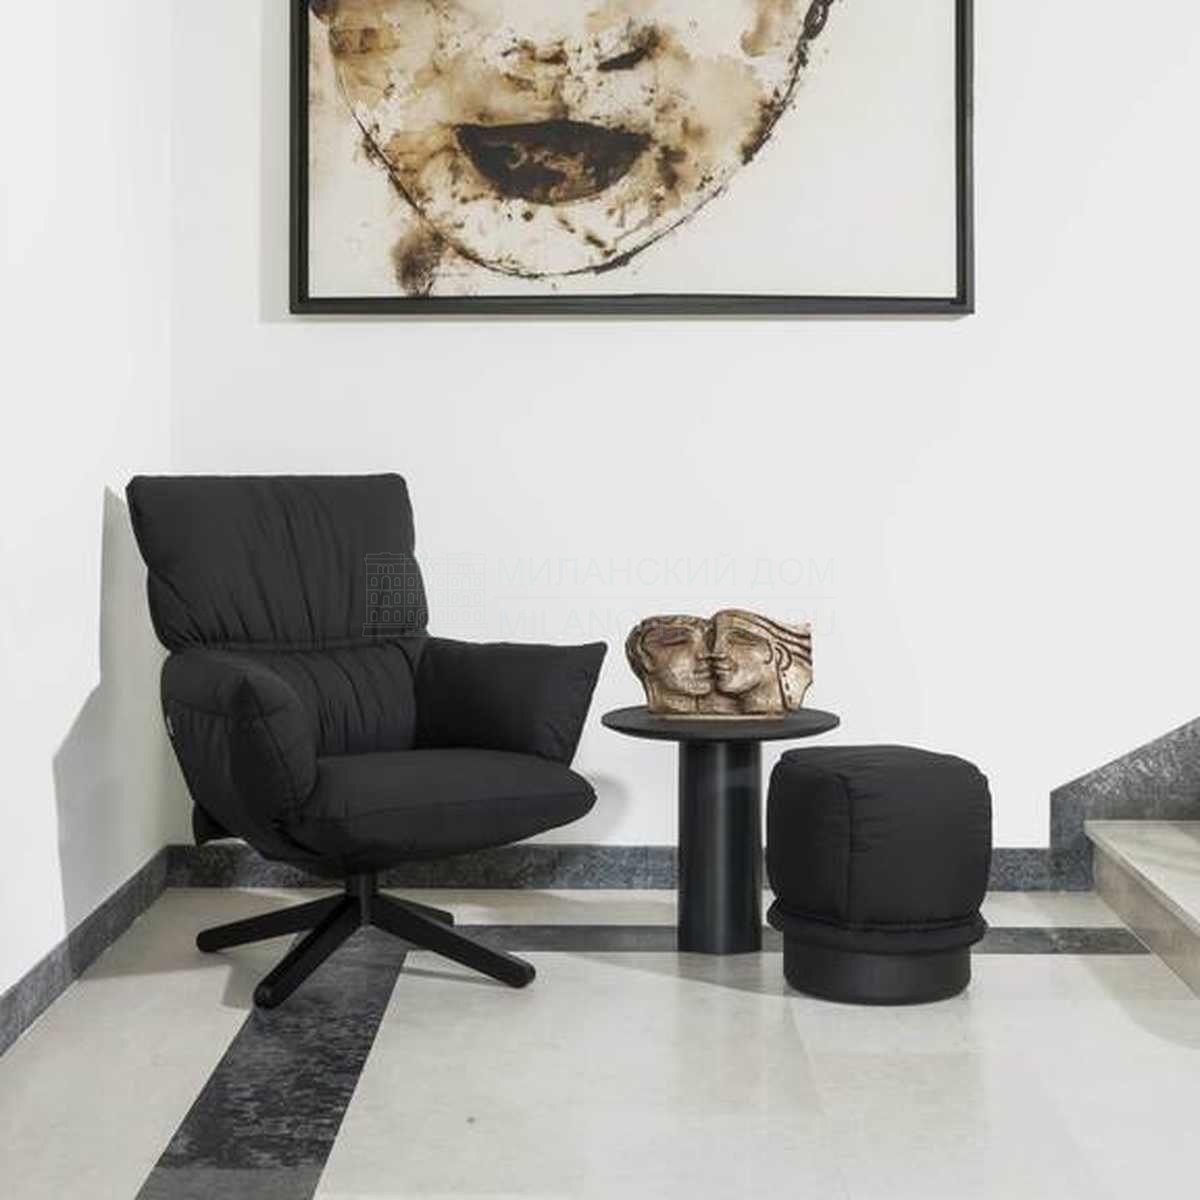 Лаунж кресло Ludo lounge armchair из Италии фабрики CAPPELLINI